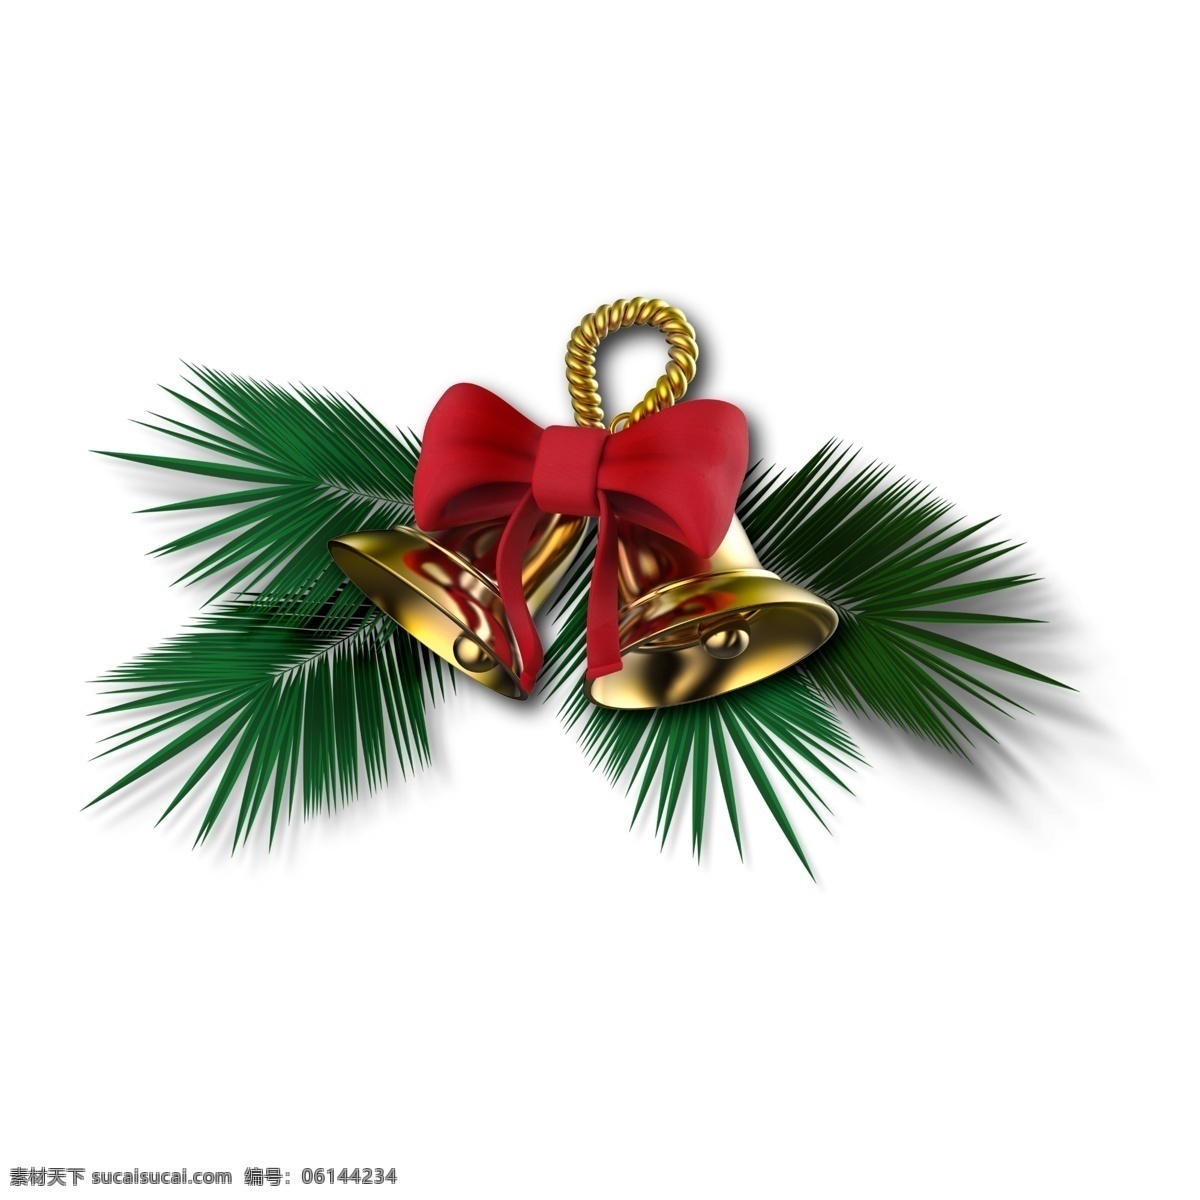 圣诞素材铃铛 圣诞铃铛松叶 圣诞素材 圣诞蝴蝶结 铃铛蝴蝶结 ps素材 分层